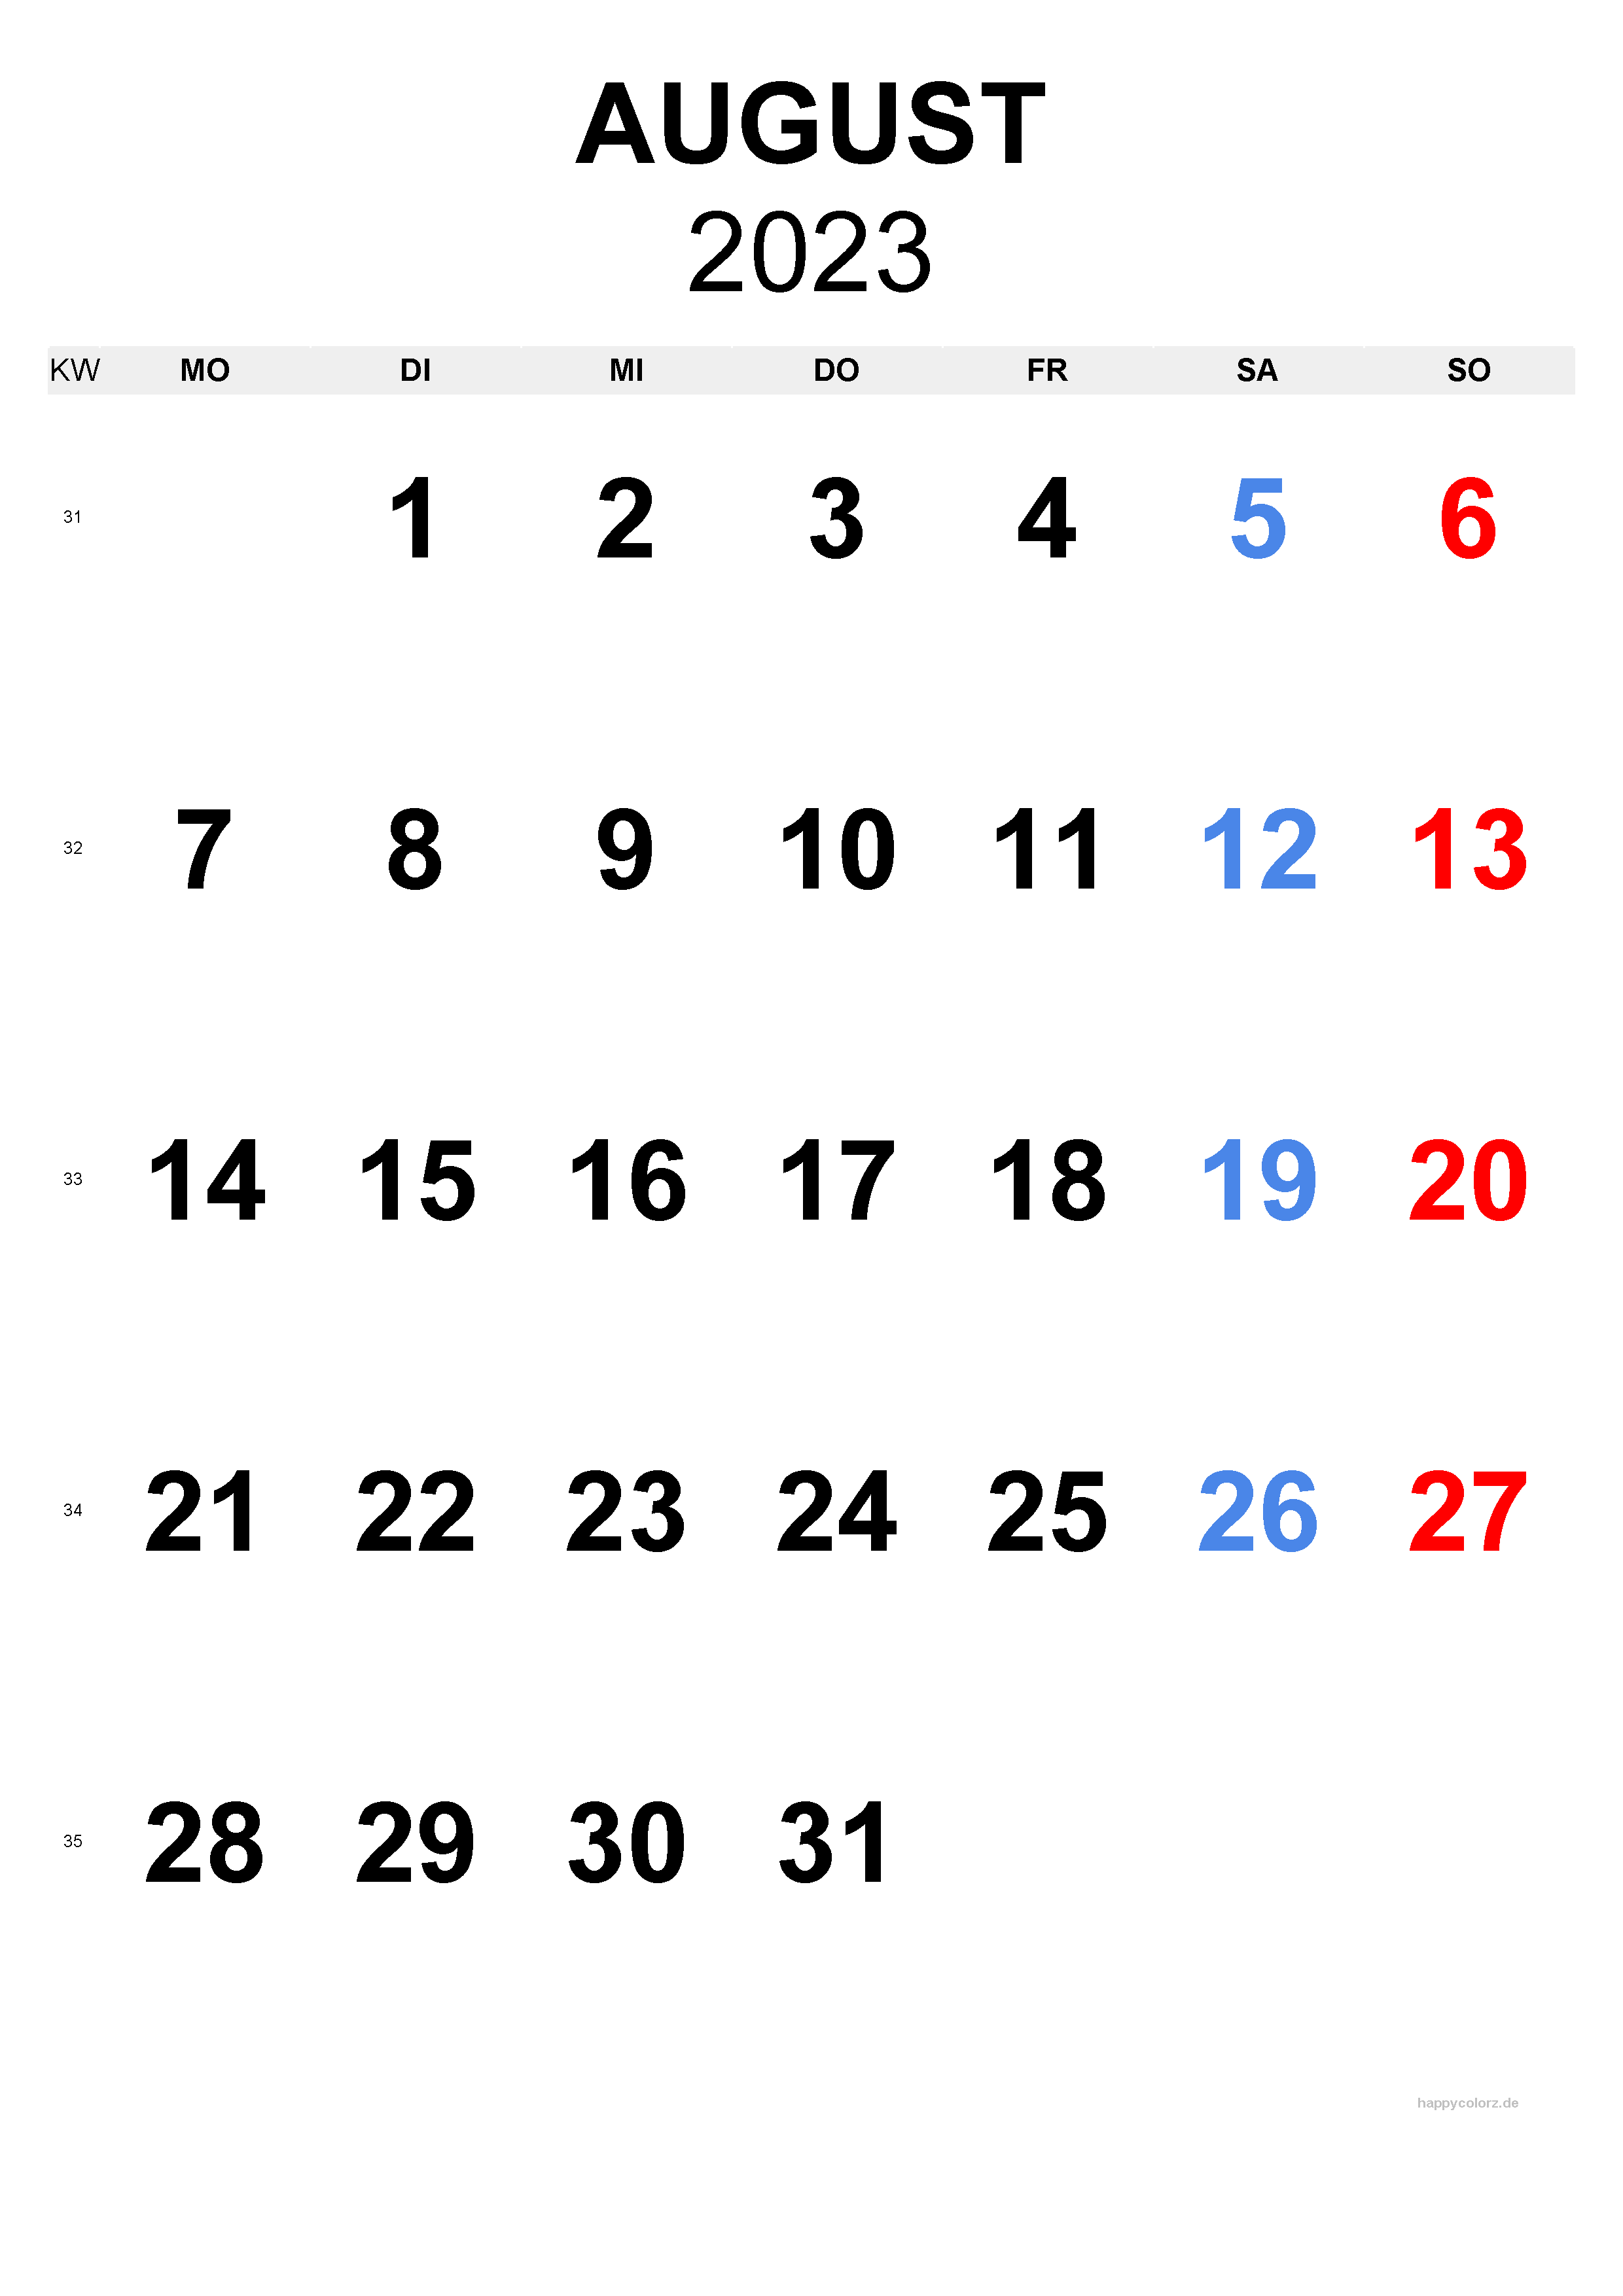 Personalisierbare August 2023 Kalendervorlagen